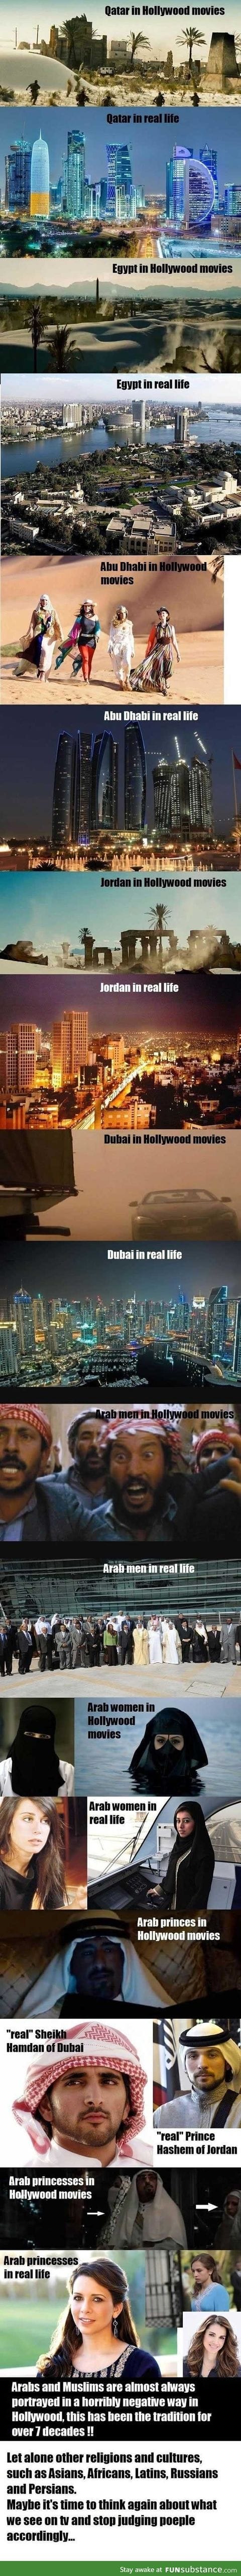 Arabs, hollywood vs reality